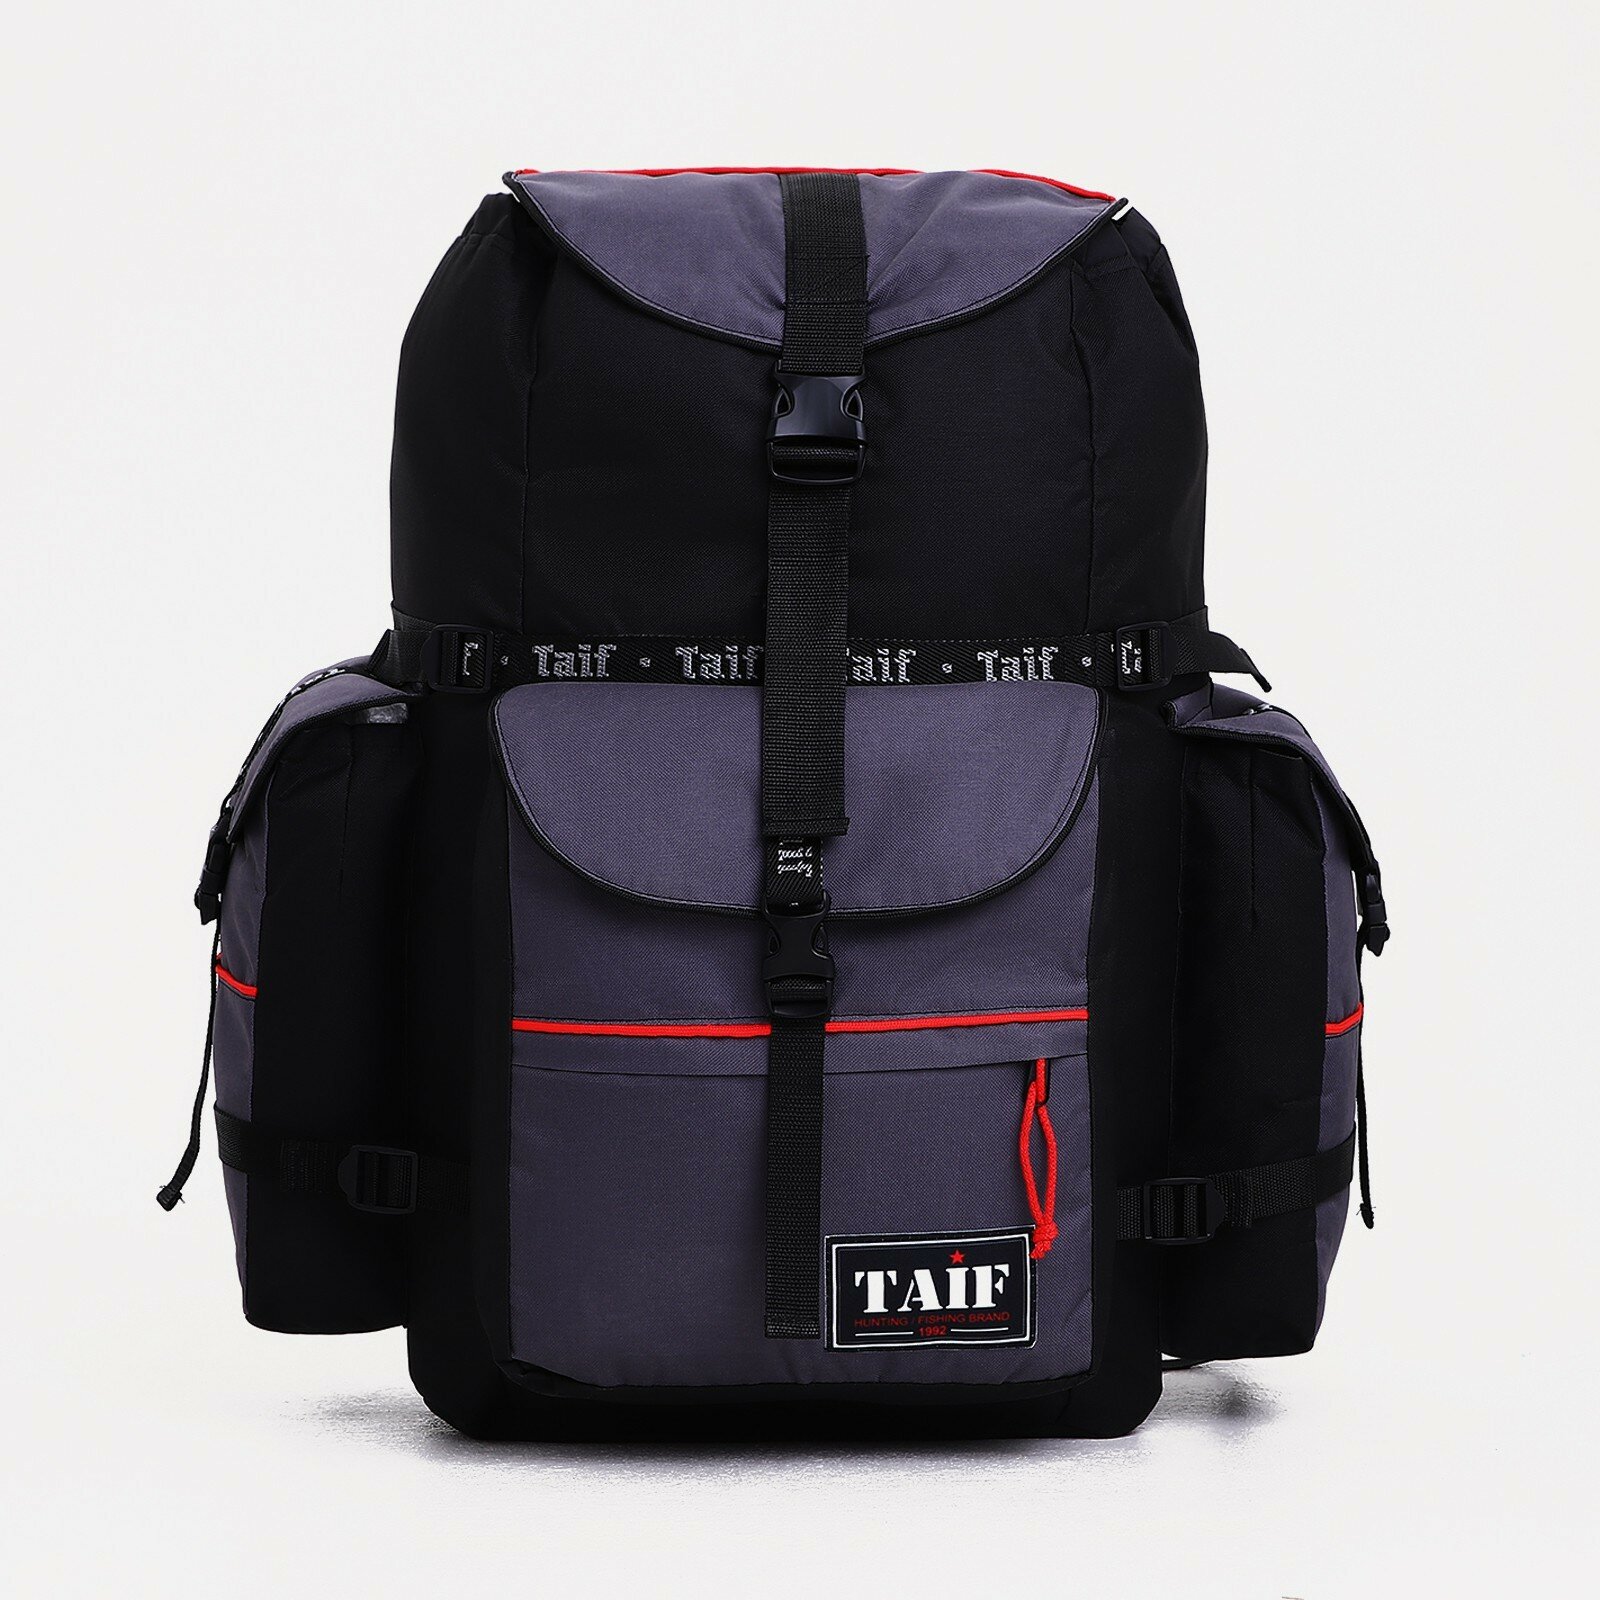 Рюкзак туристический на клапане, 65 л, 3 наружных кармана, цвет чёрный/серый